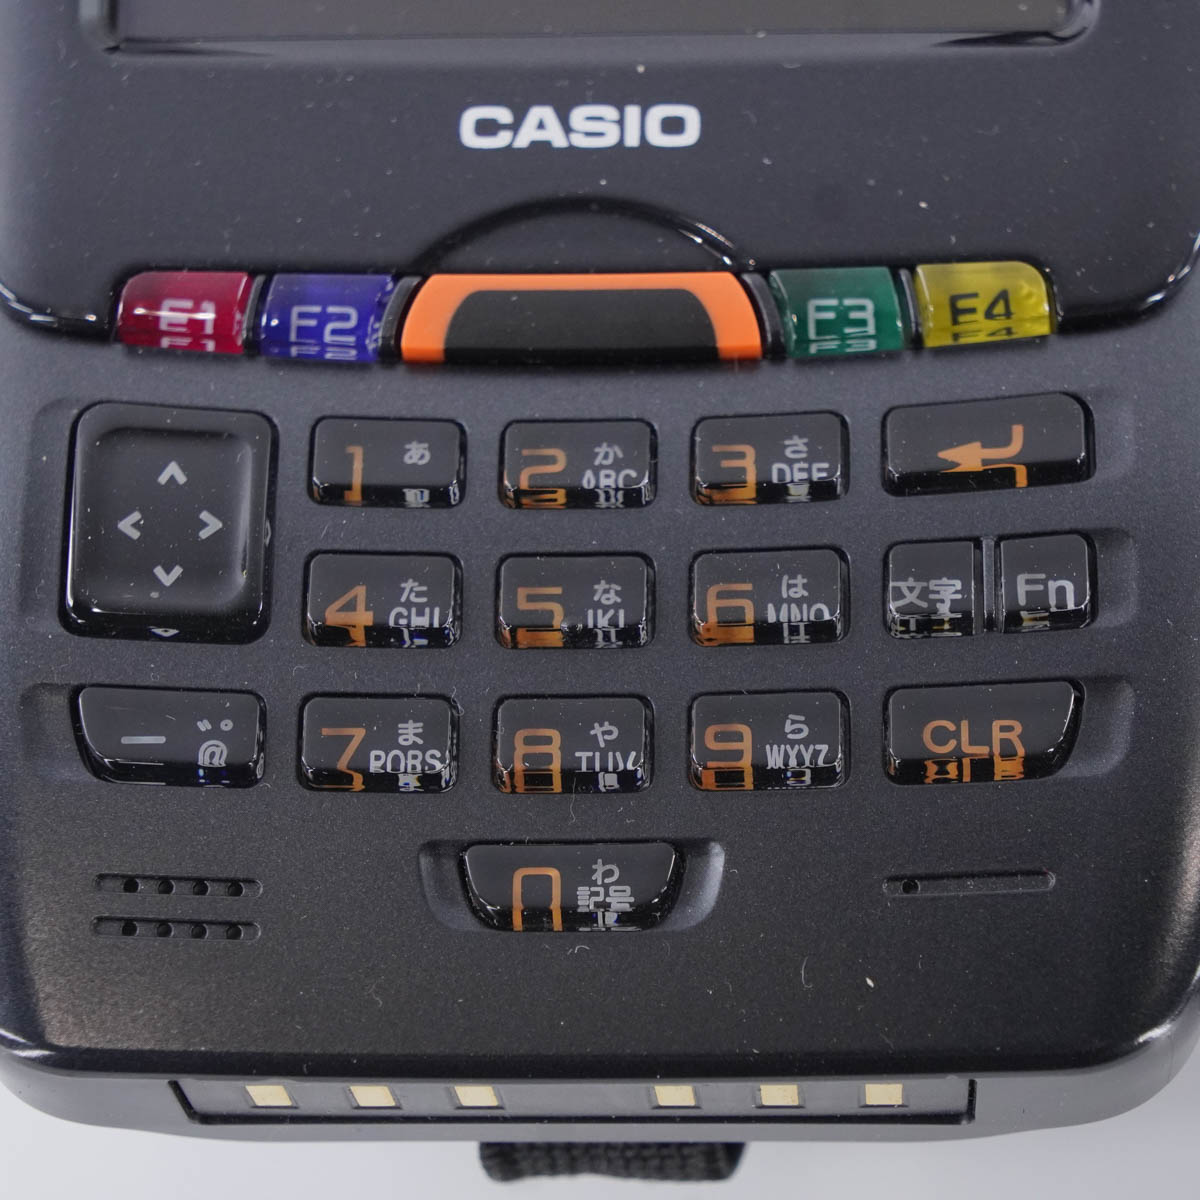 PG]USED 8日保証 5台セット CASIO DT-5300L50S ハンディターミナル 業務用PDA スキャナー ACアダプター 充電器 04606-0064] その他 中古販売分析機器計測器総合商社ディルウィングス